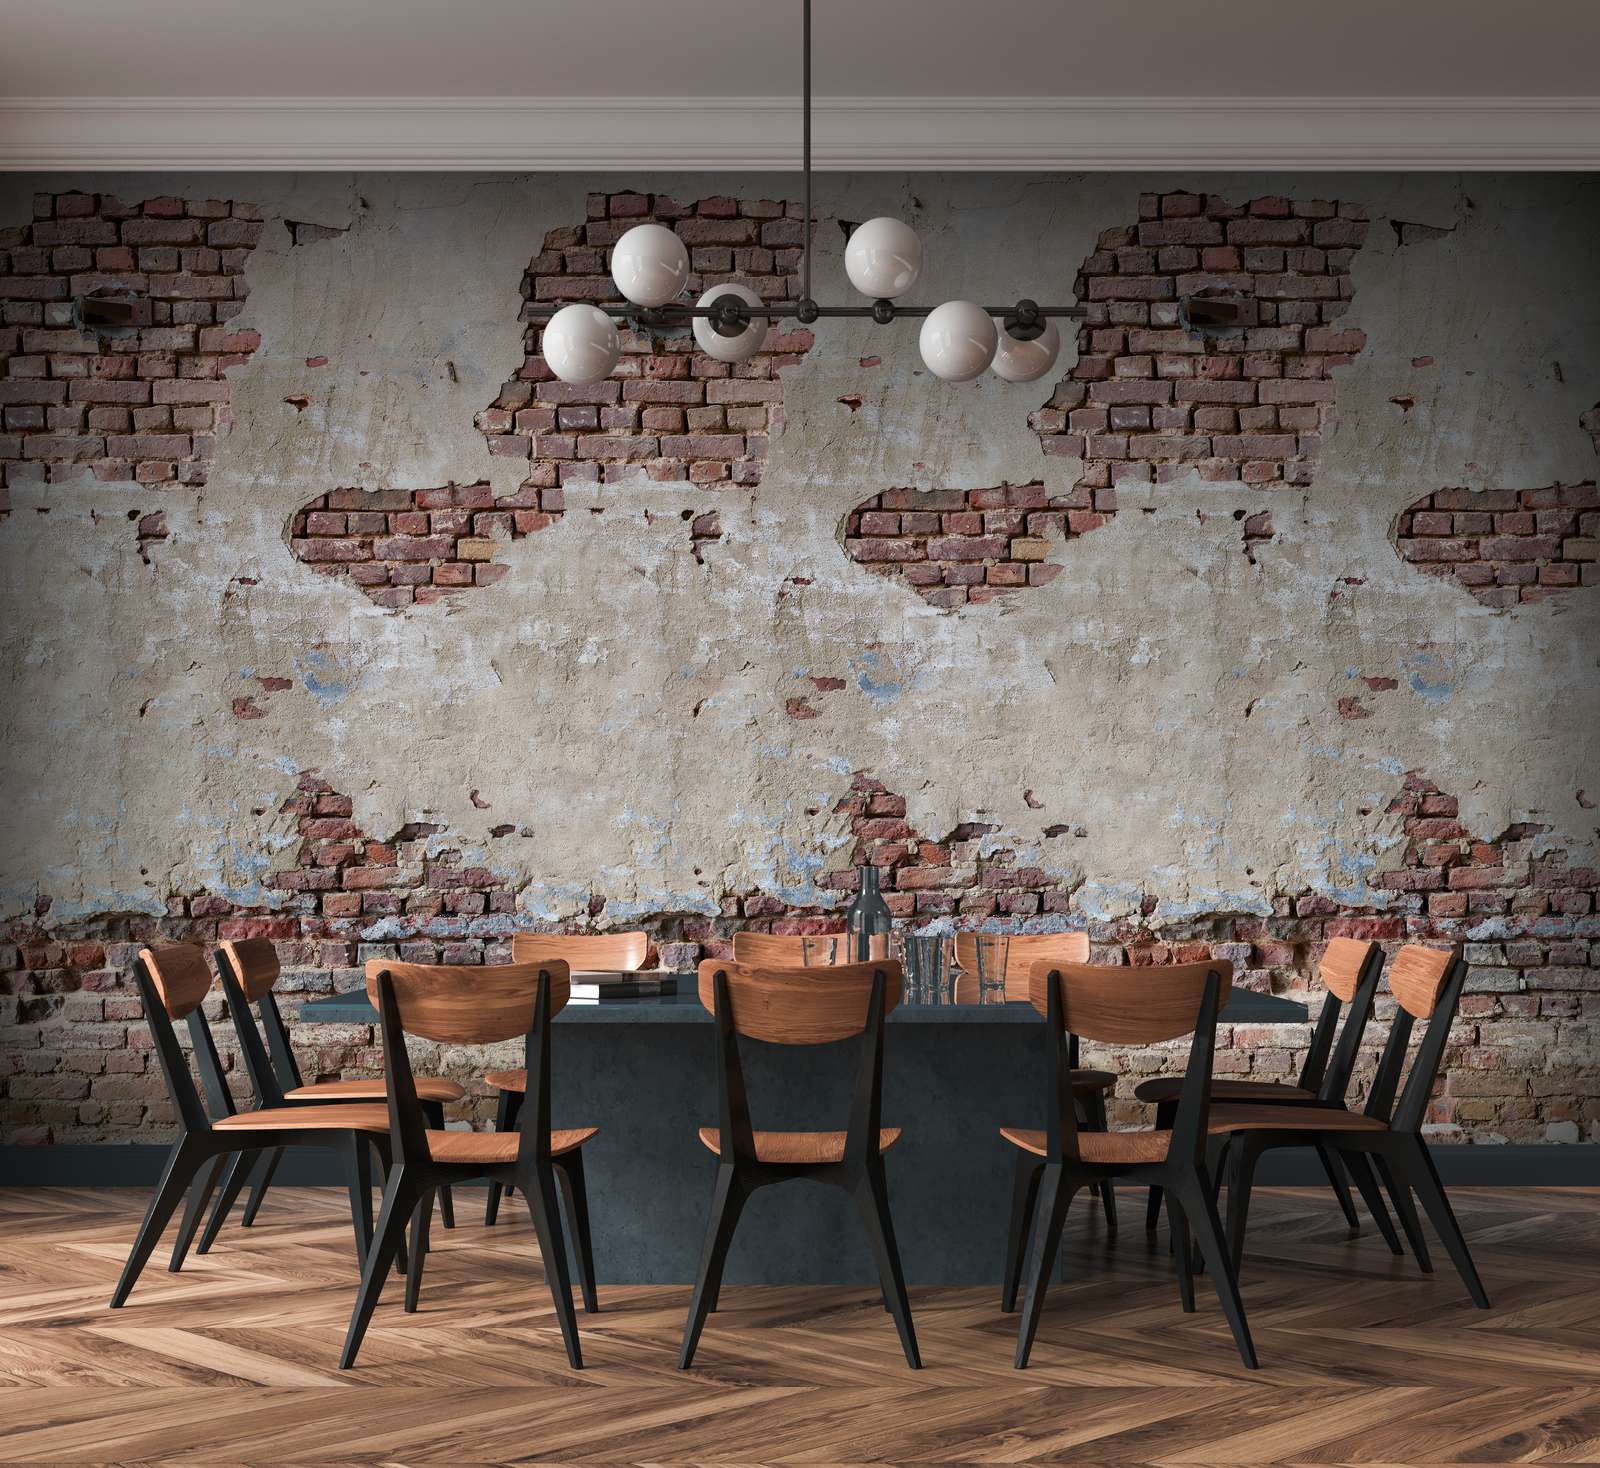             Brick Wall Wallpaper in Used Look - Beige, Brown, Cream
        